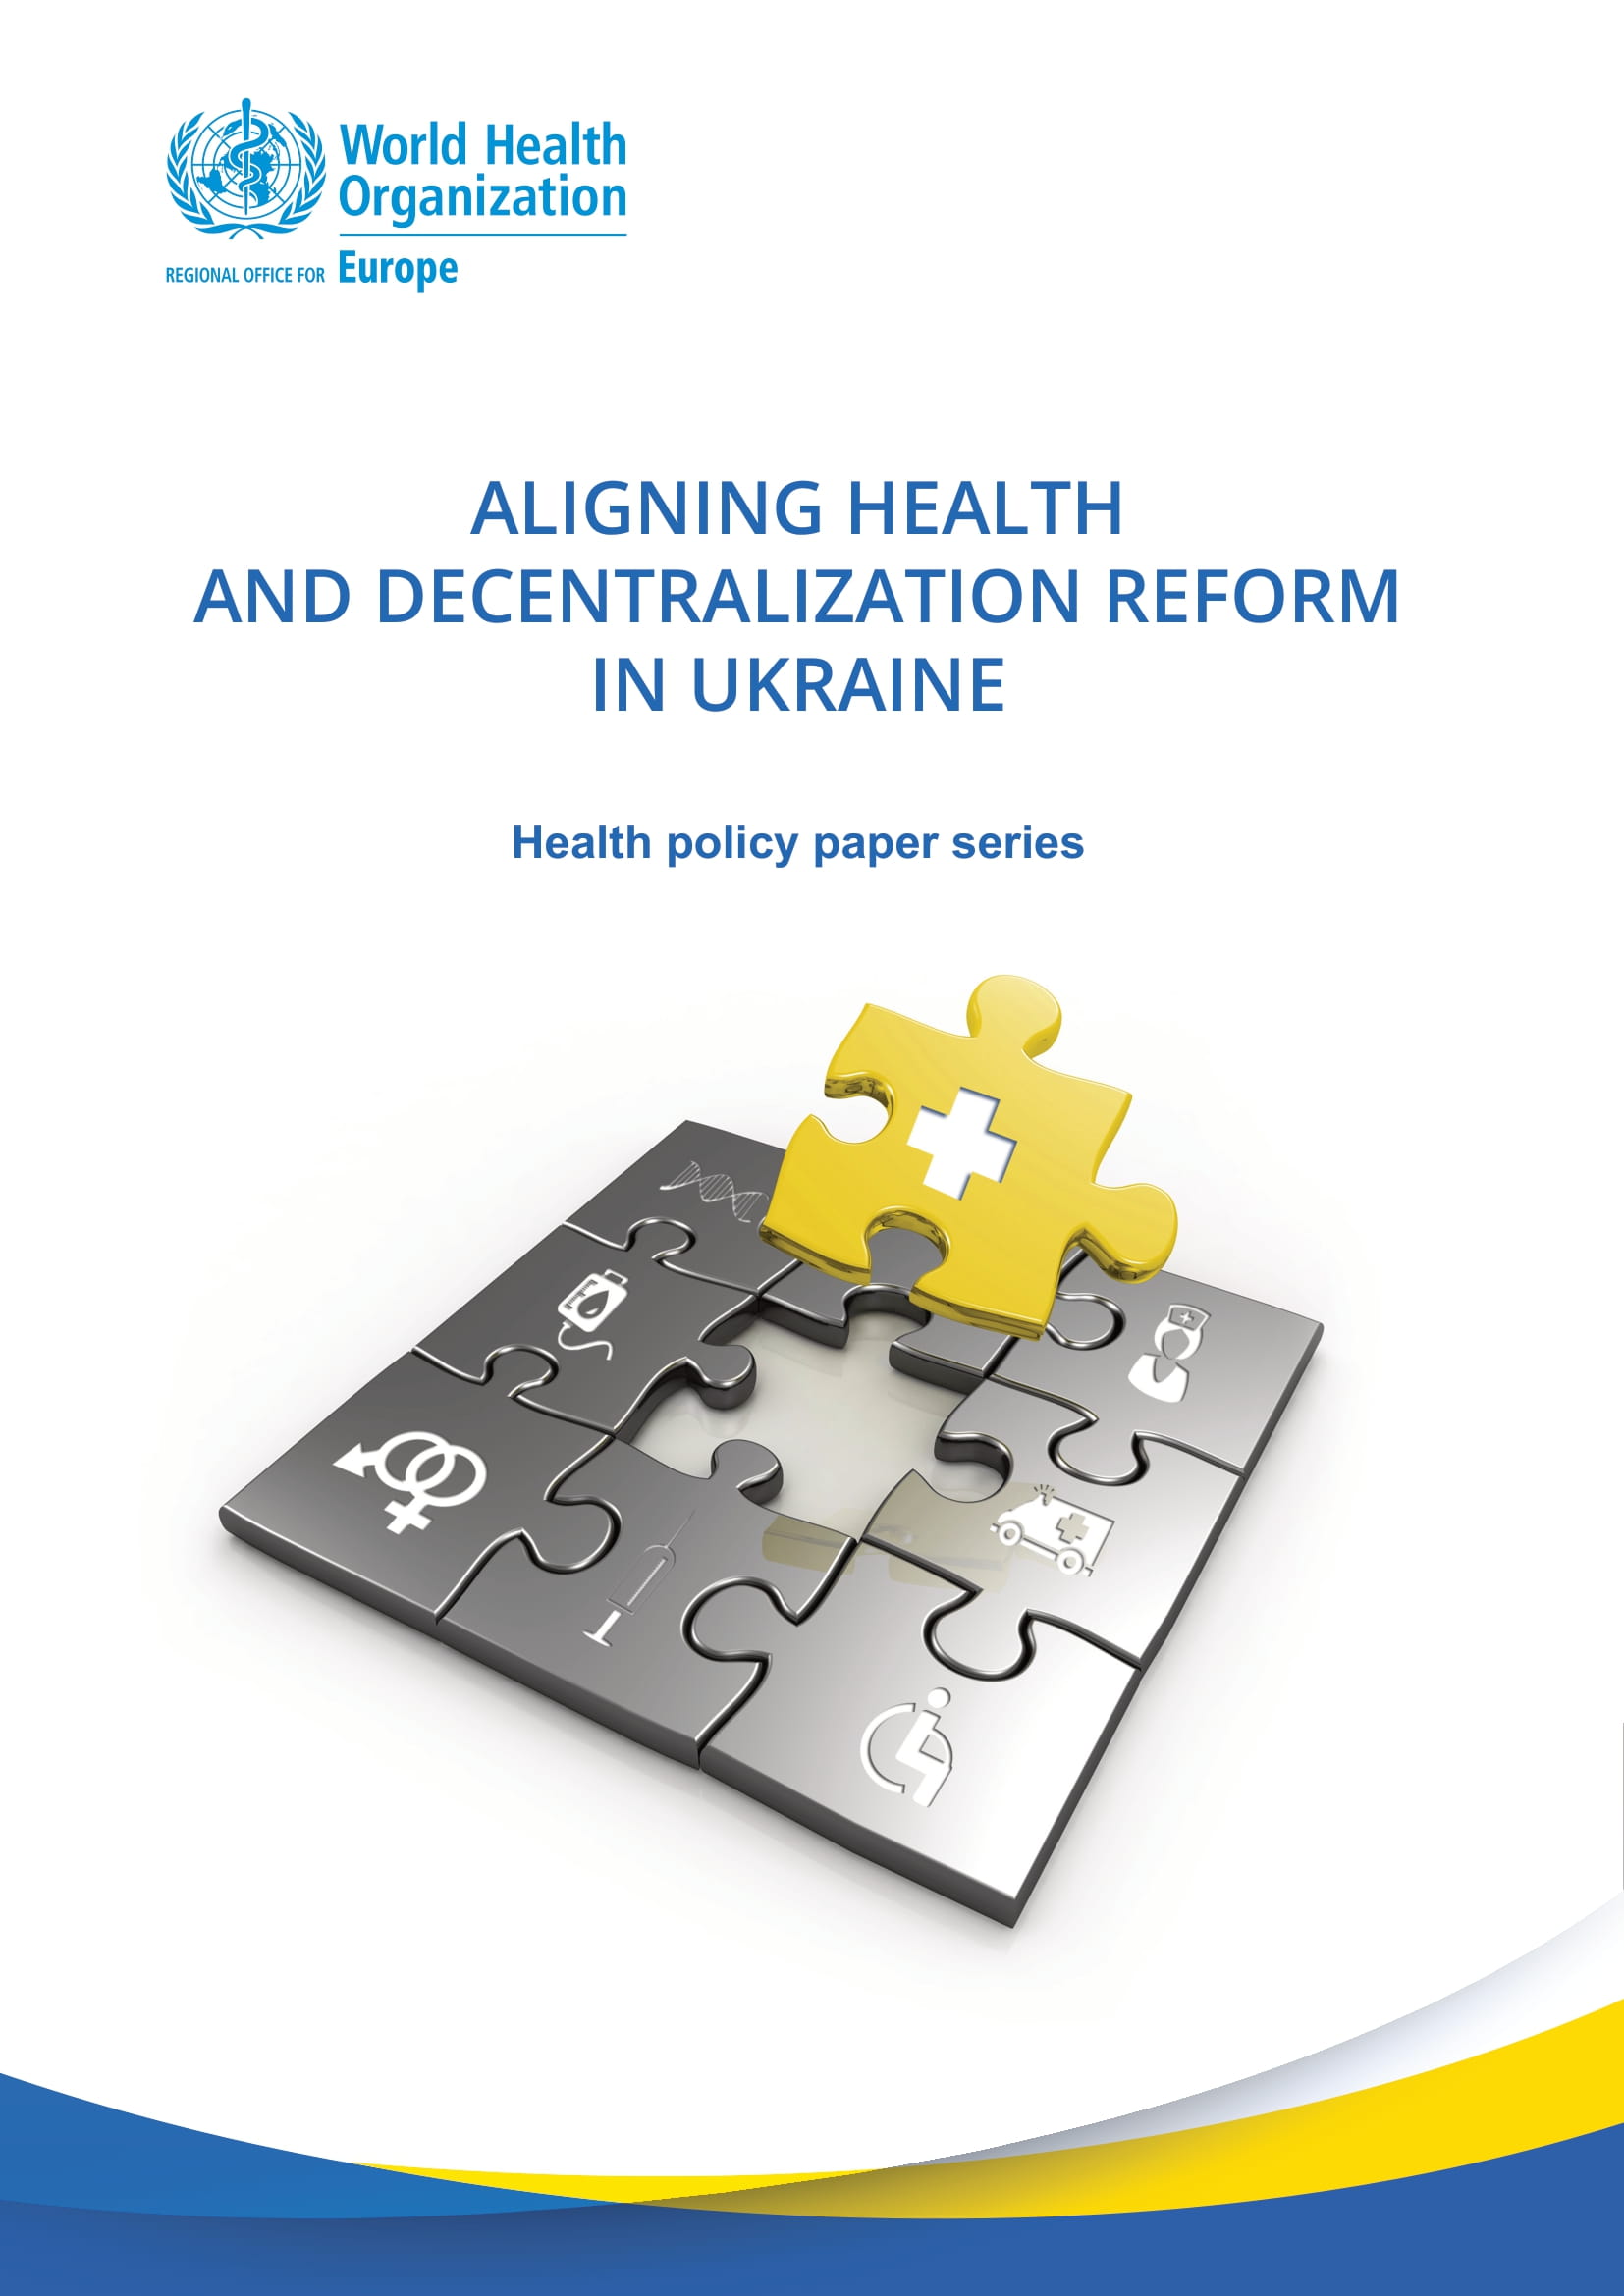 Опубликован новый отчет о согласовании реформы здравоохранения и децентрализации в Украине